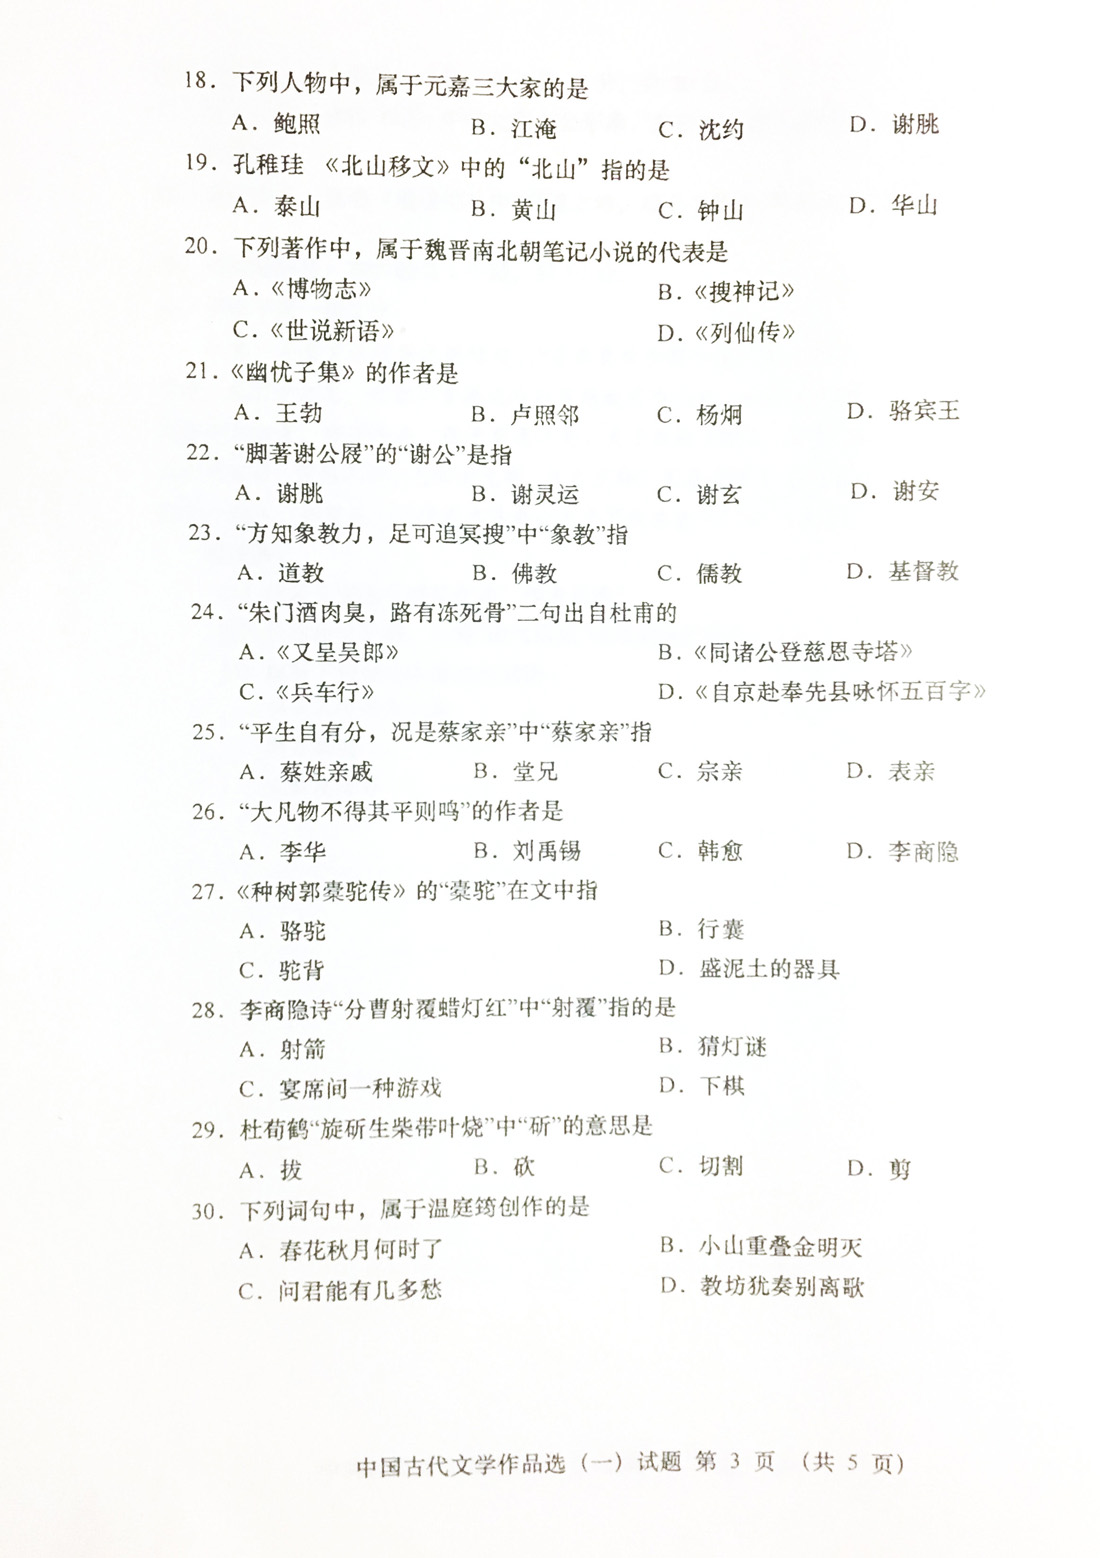 贵州2019年04月自考00532中国古代文学作品选（一）真题及答案